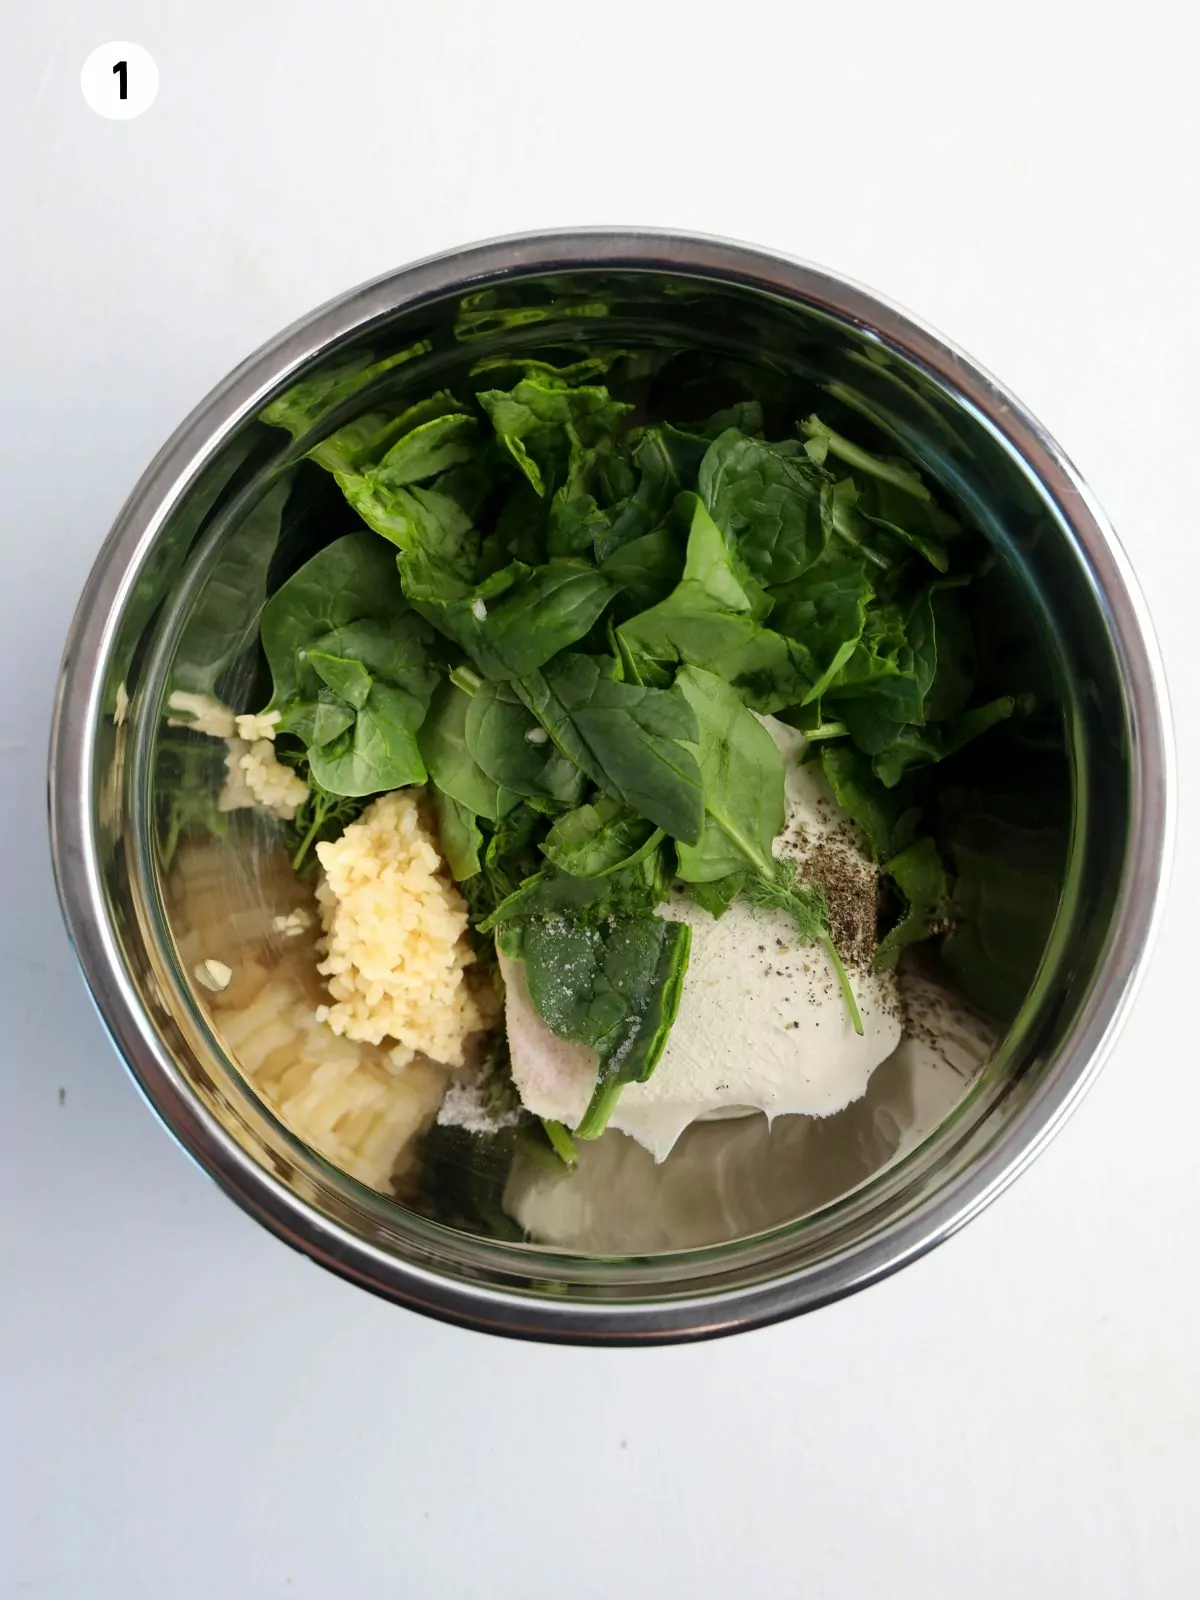 spinach dip ingredients in metal bowl.